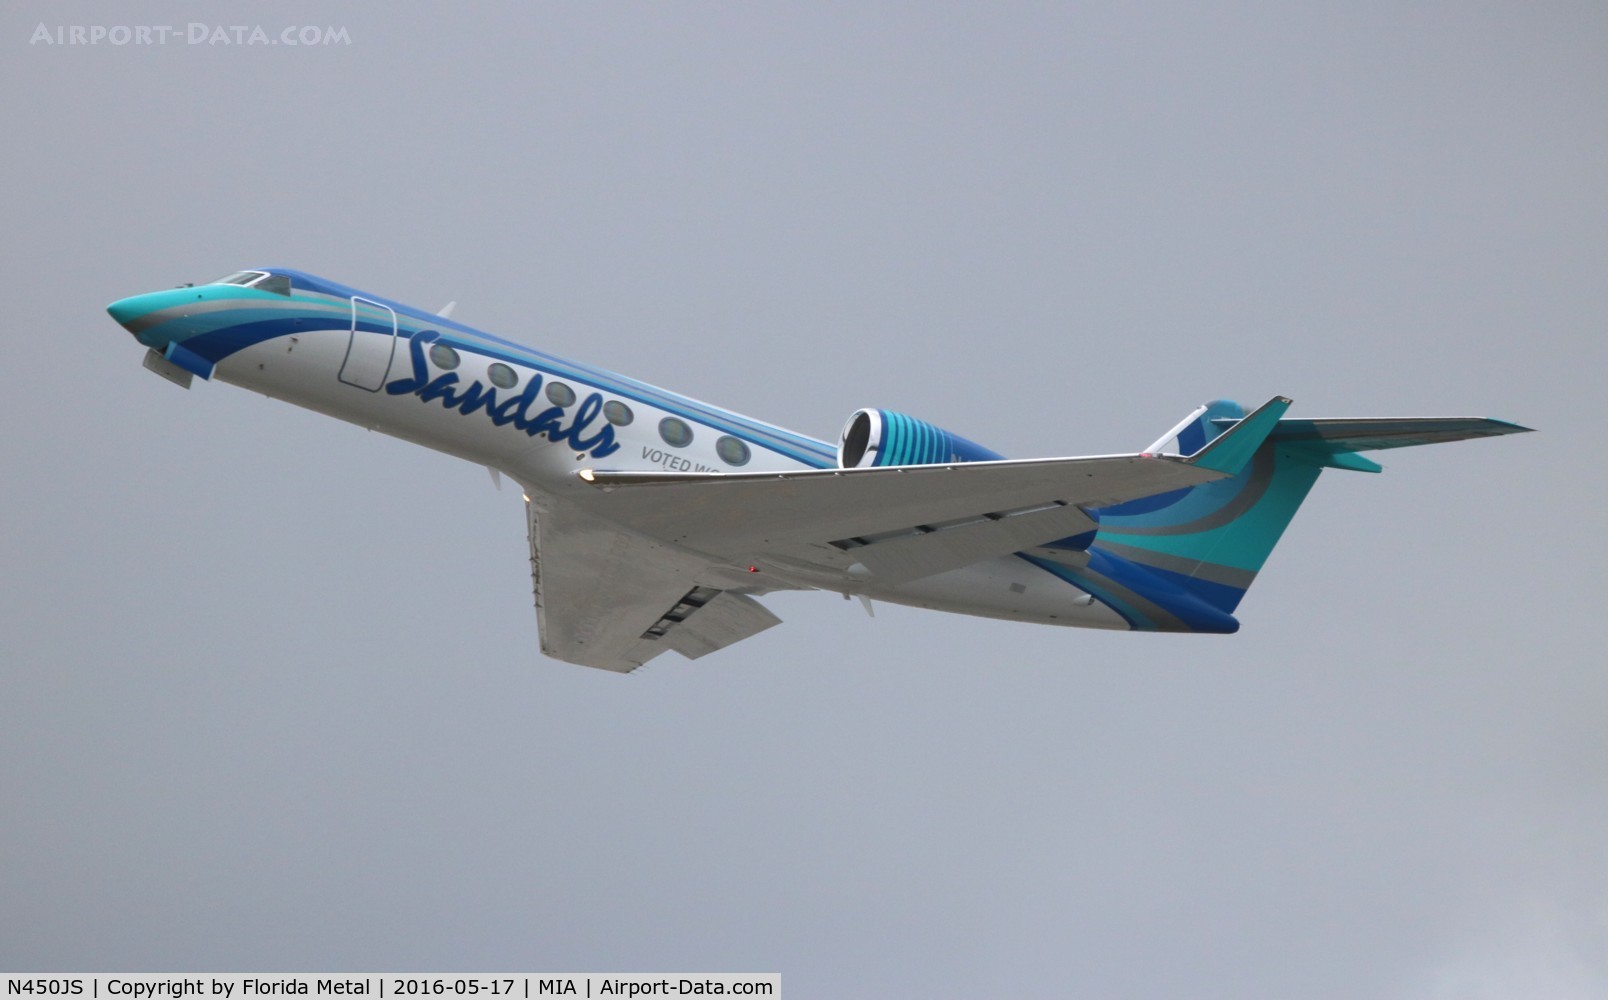 N450JS, 2015 Gulfstream Aerospace GIV-X (G450) C/N 4344, Sandals